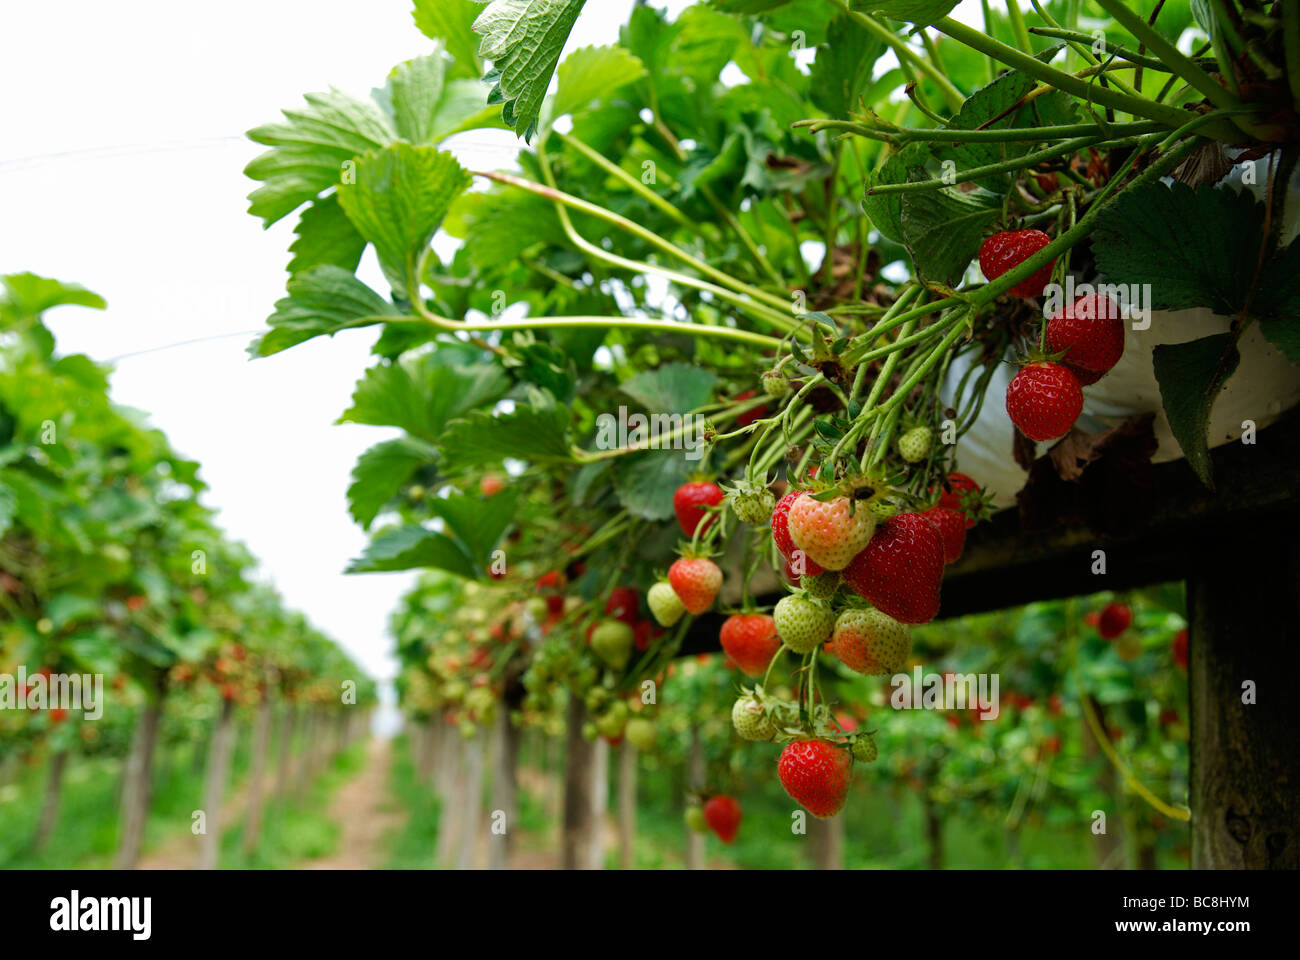 Strabwerries su piante a scegliere la vostra azienda frutticola in hampshire, Regno Unito Foto Stock